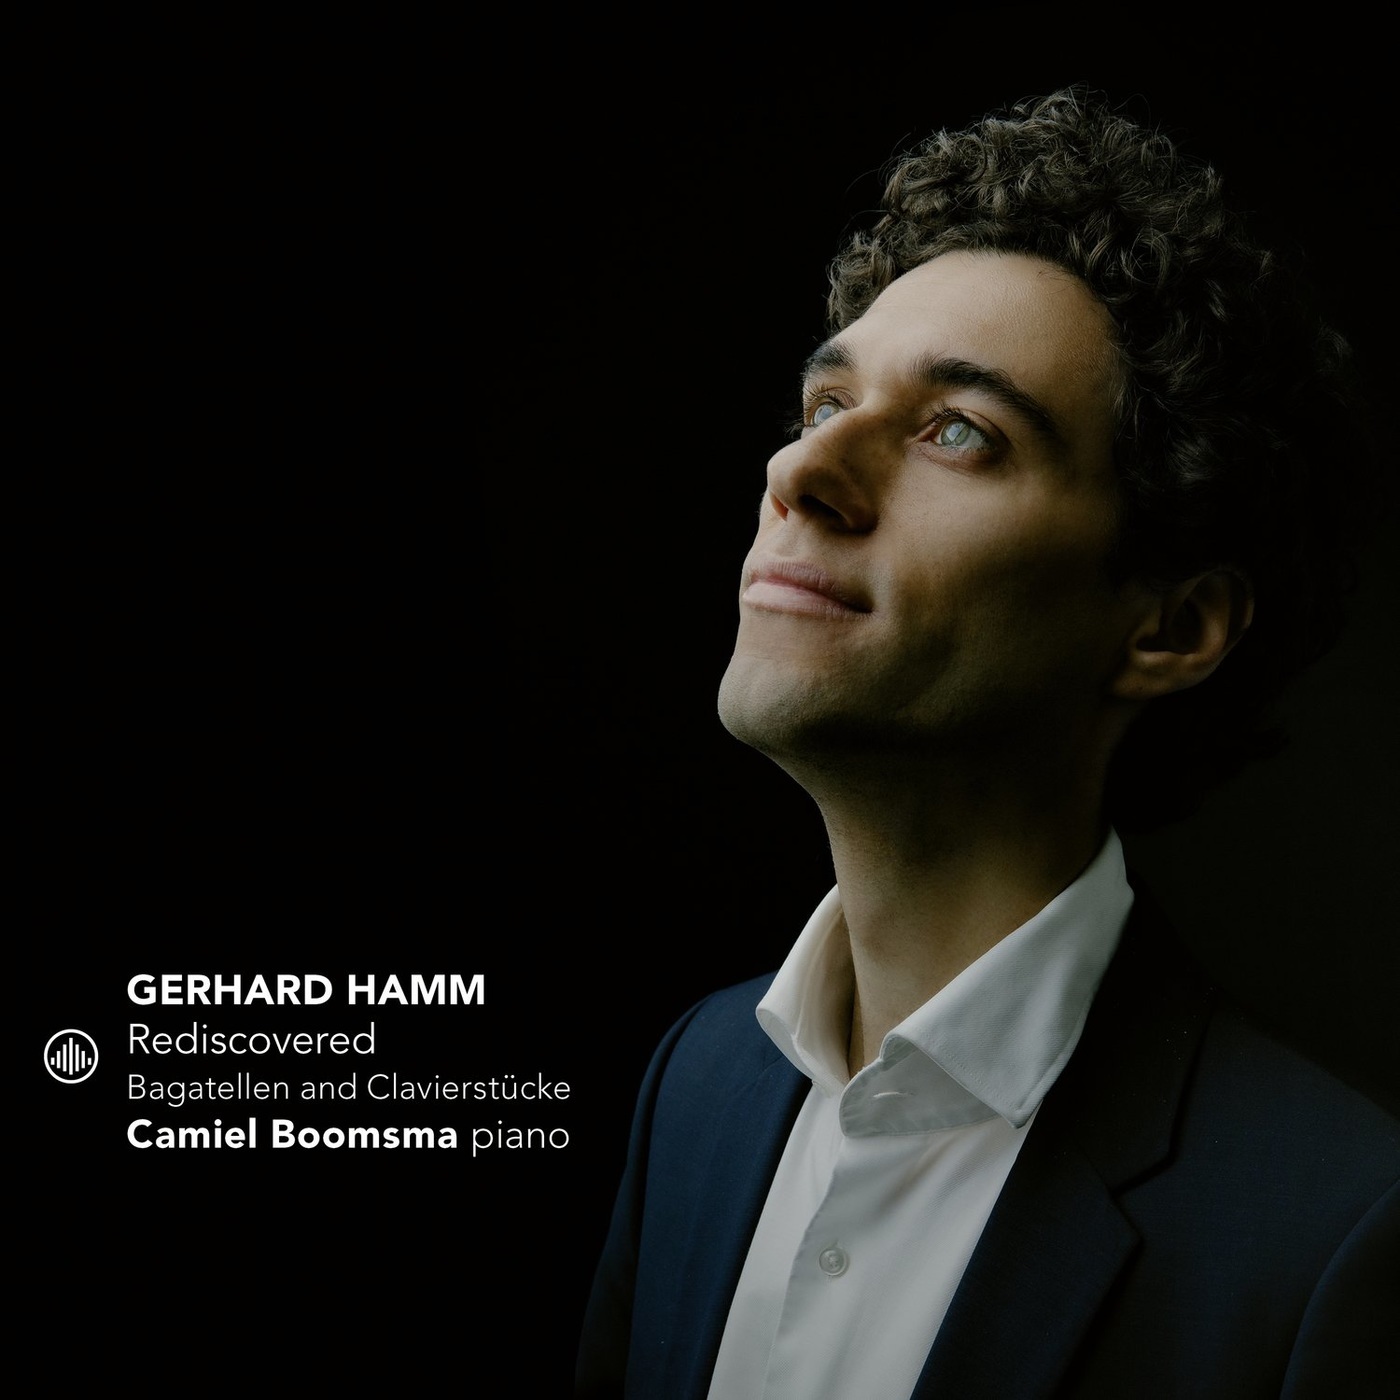 Camiel Boomsma - Gerhard Hamm: Rediscovered - Bagatellen and Klavierstucke (2021) [FLAC 24bit/96kHz]